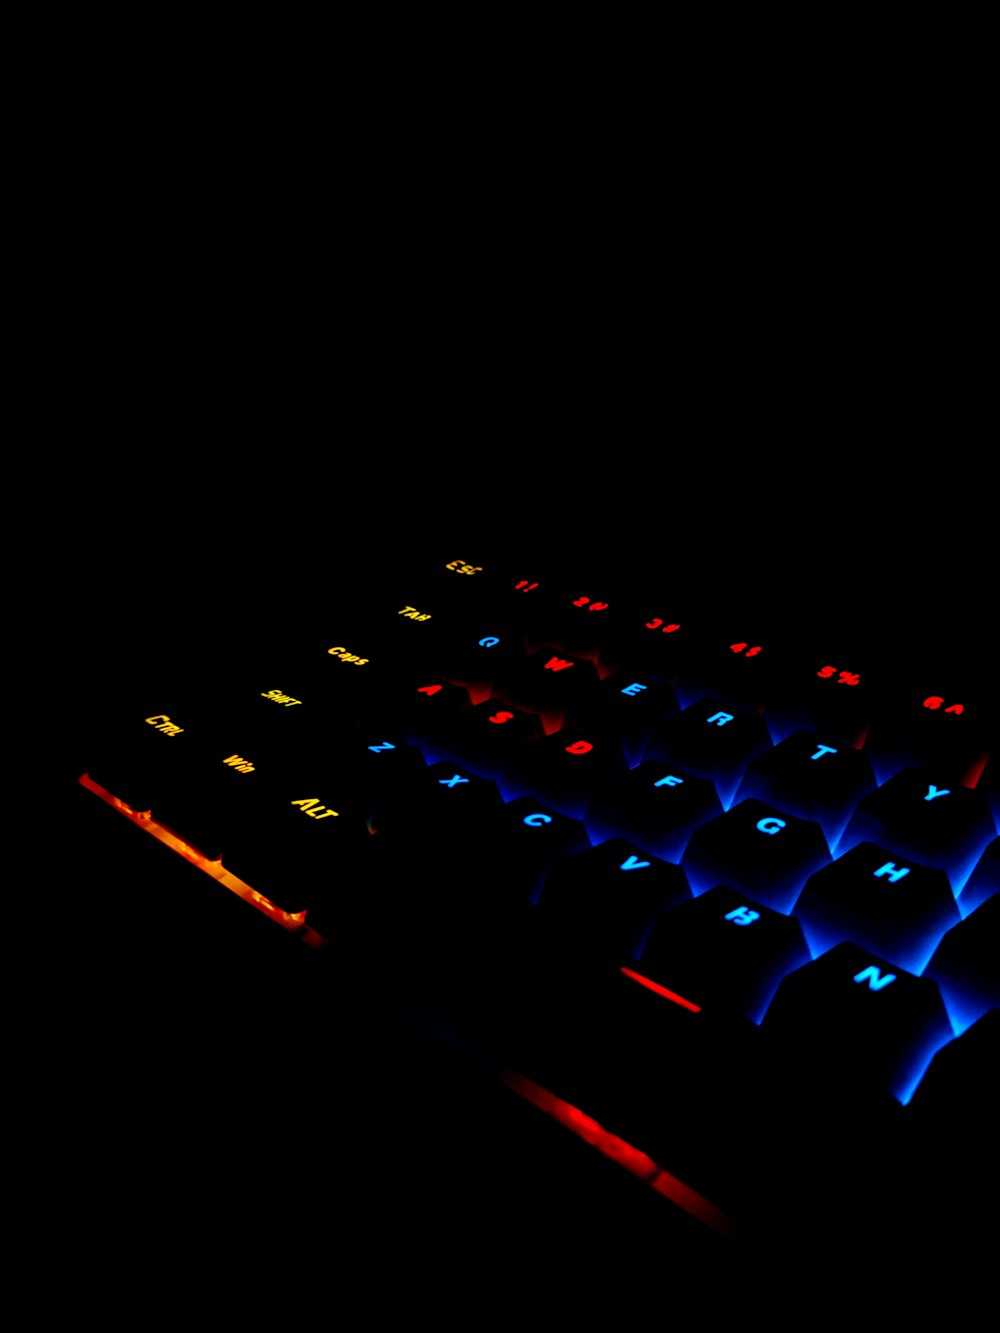 Un teclado de computadora iluminado en la oscuridad